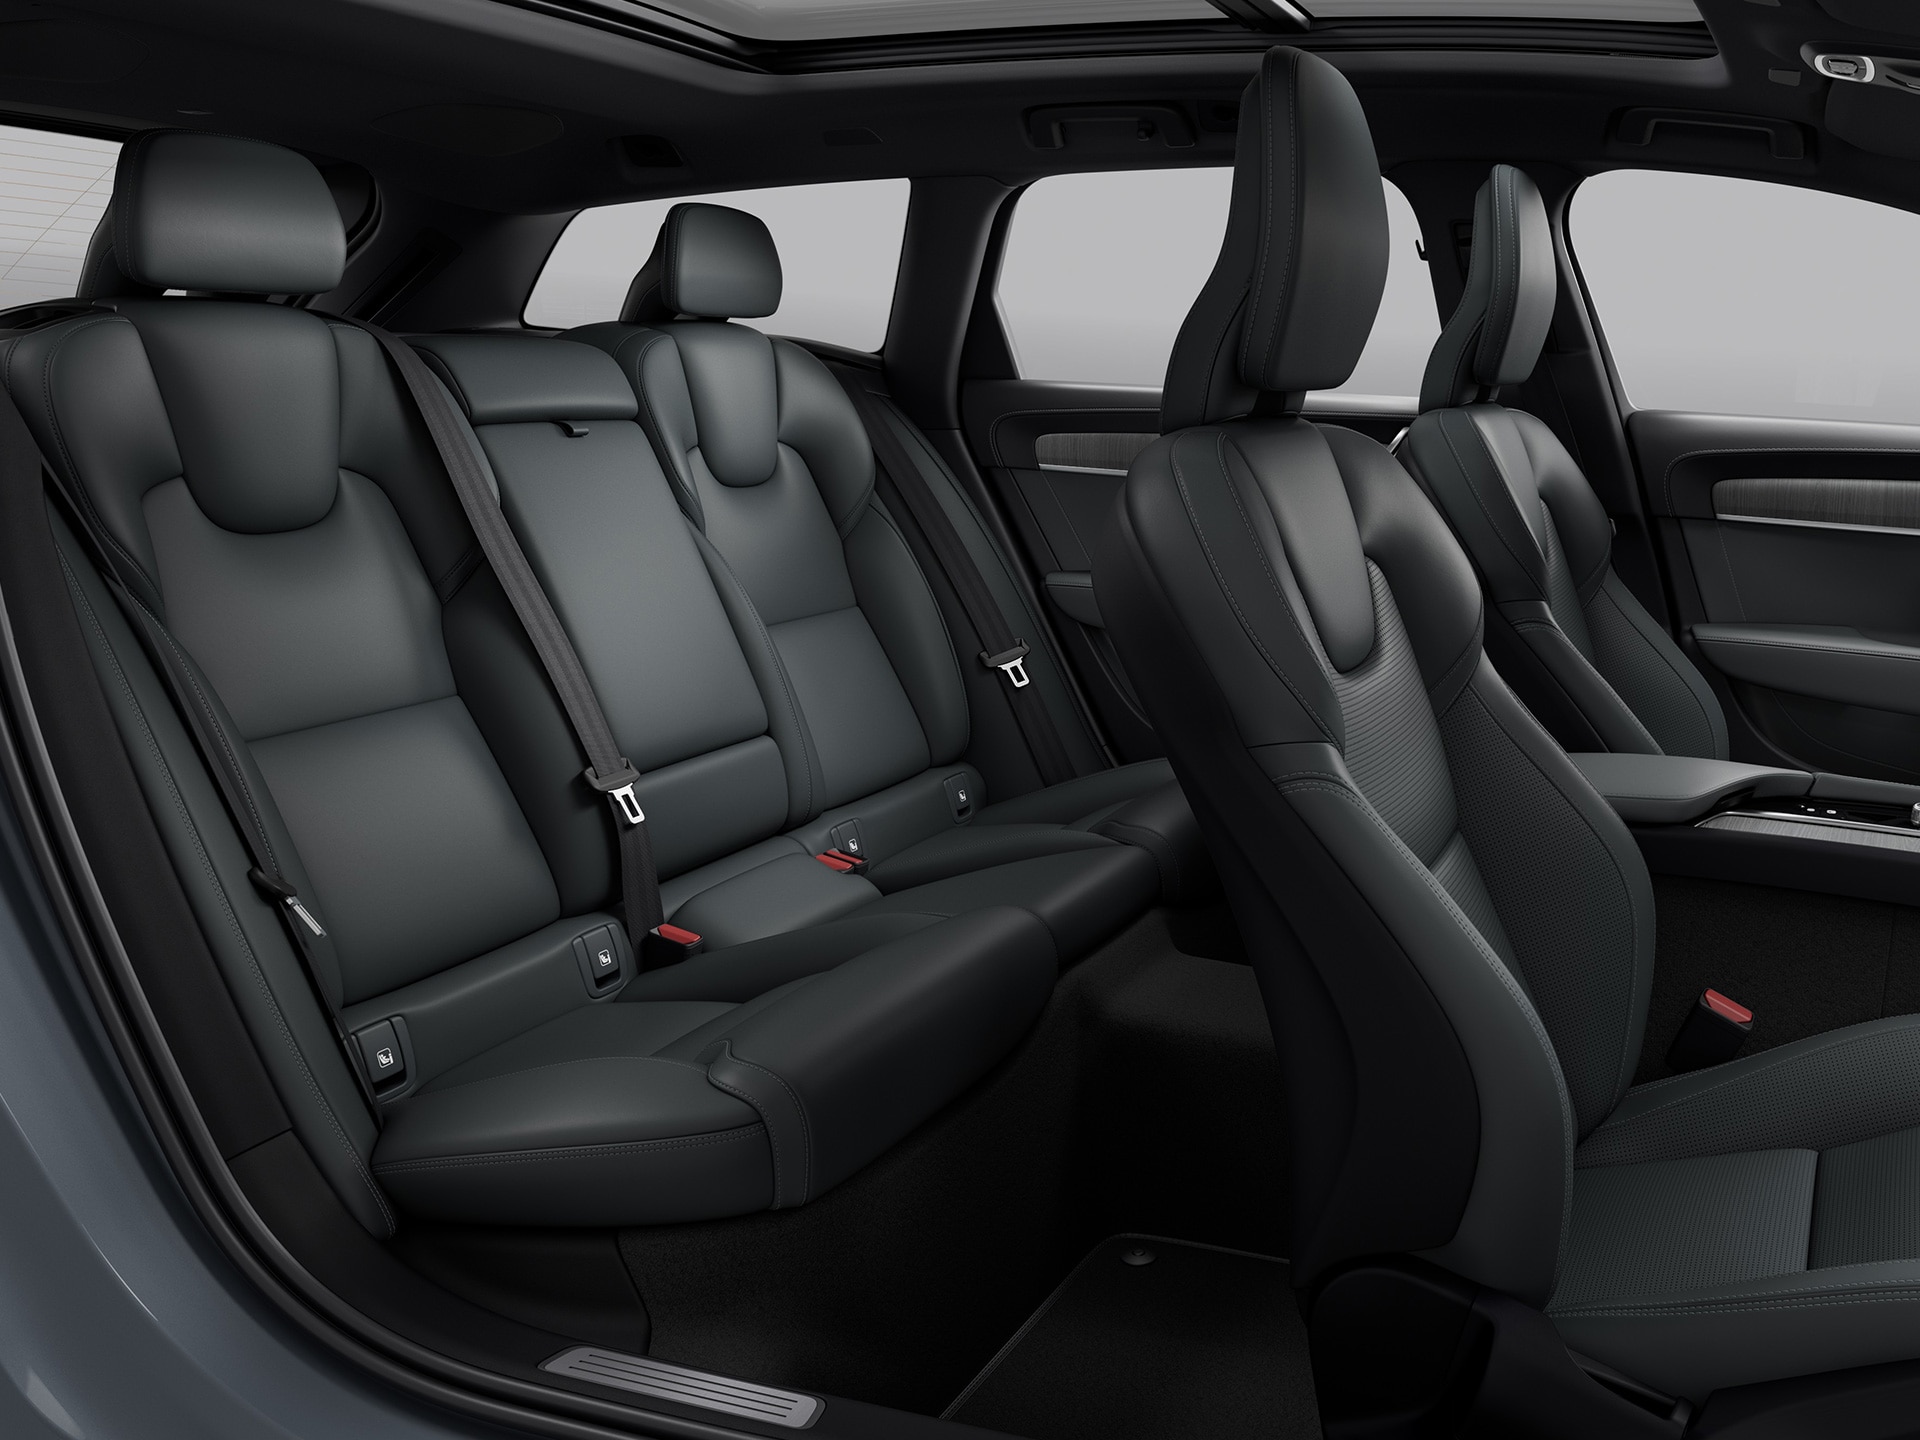 Ευέλικτες επιλογές φόρτωσης και καθισμάτων και ευρύχωρη διαρρύθμιση σε ένα Volvo V90 Cross Country.